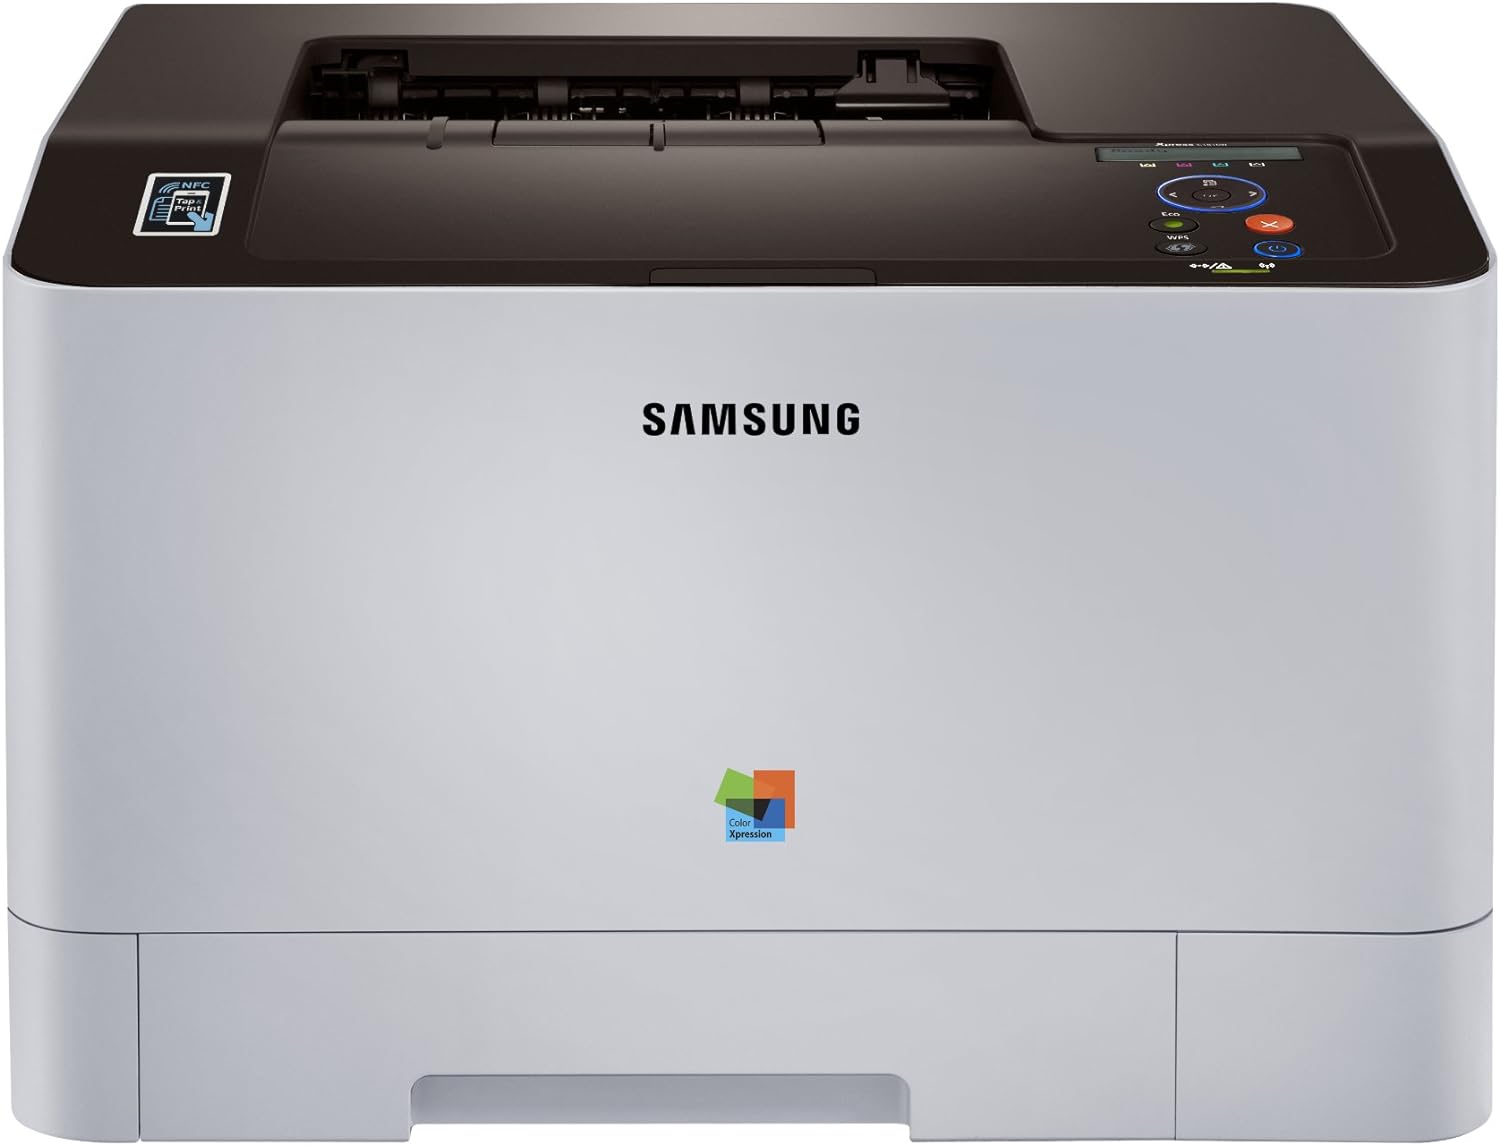 Samsung SLC1810W/XAA Xpress Laser Color Printer